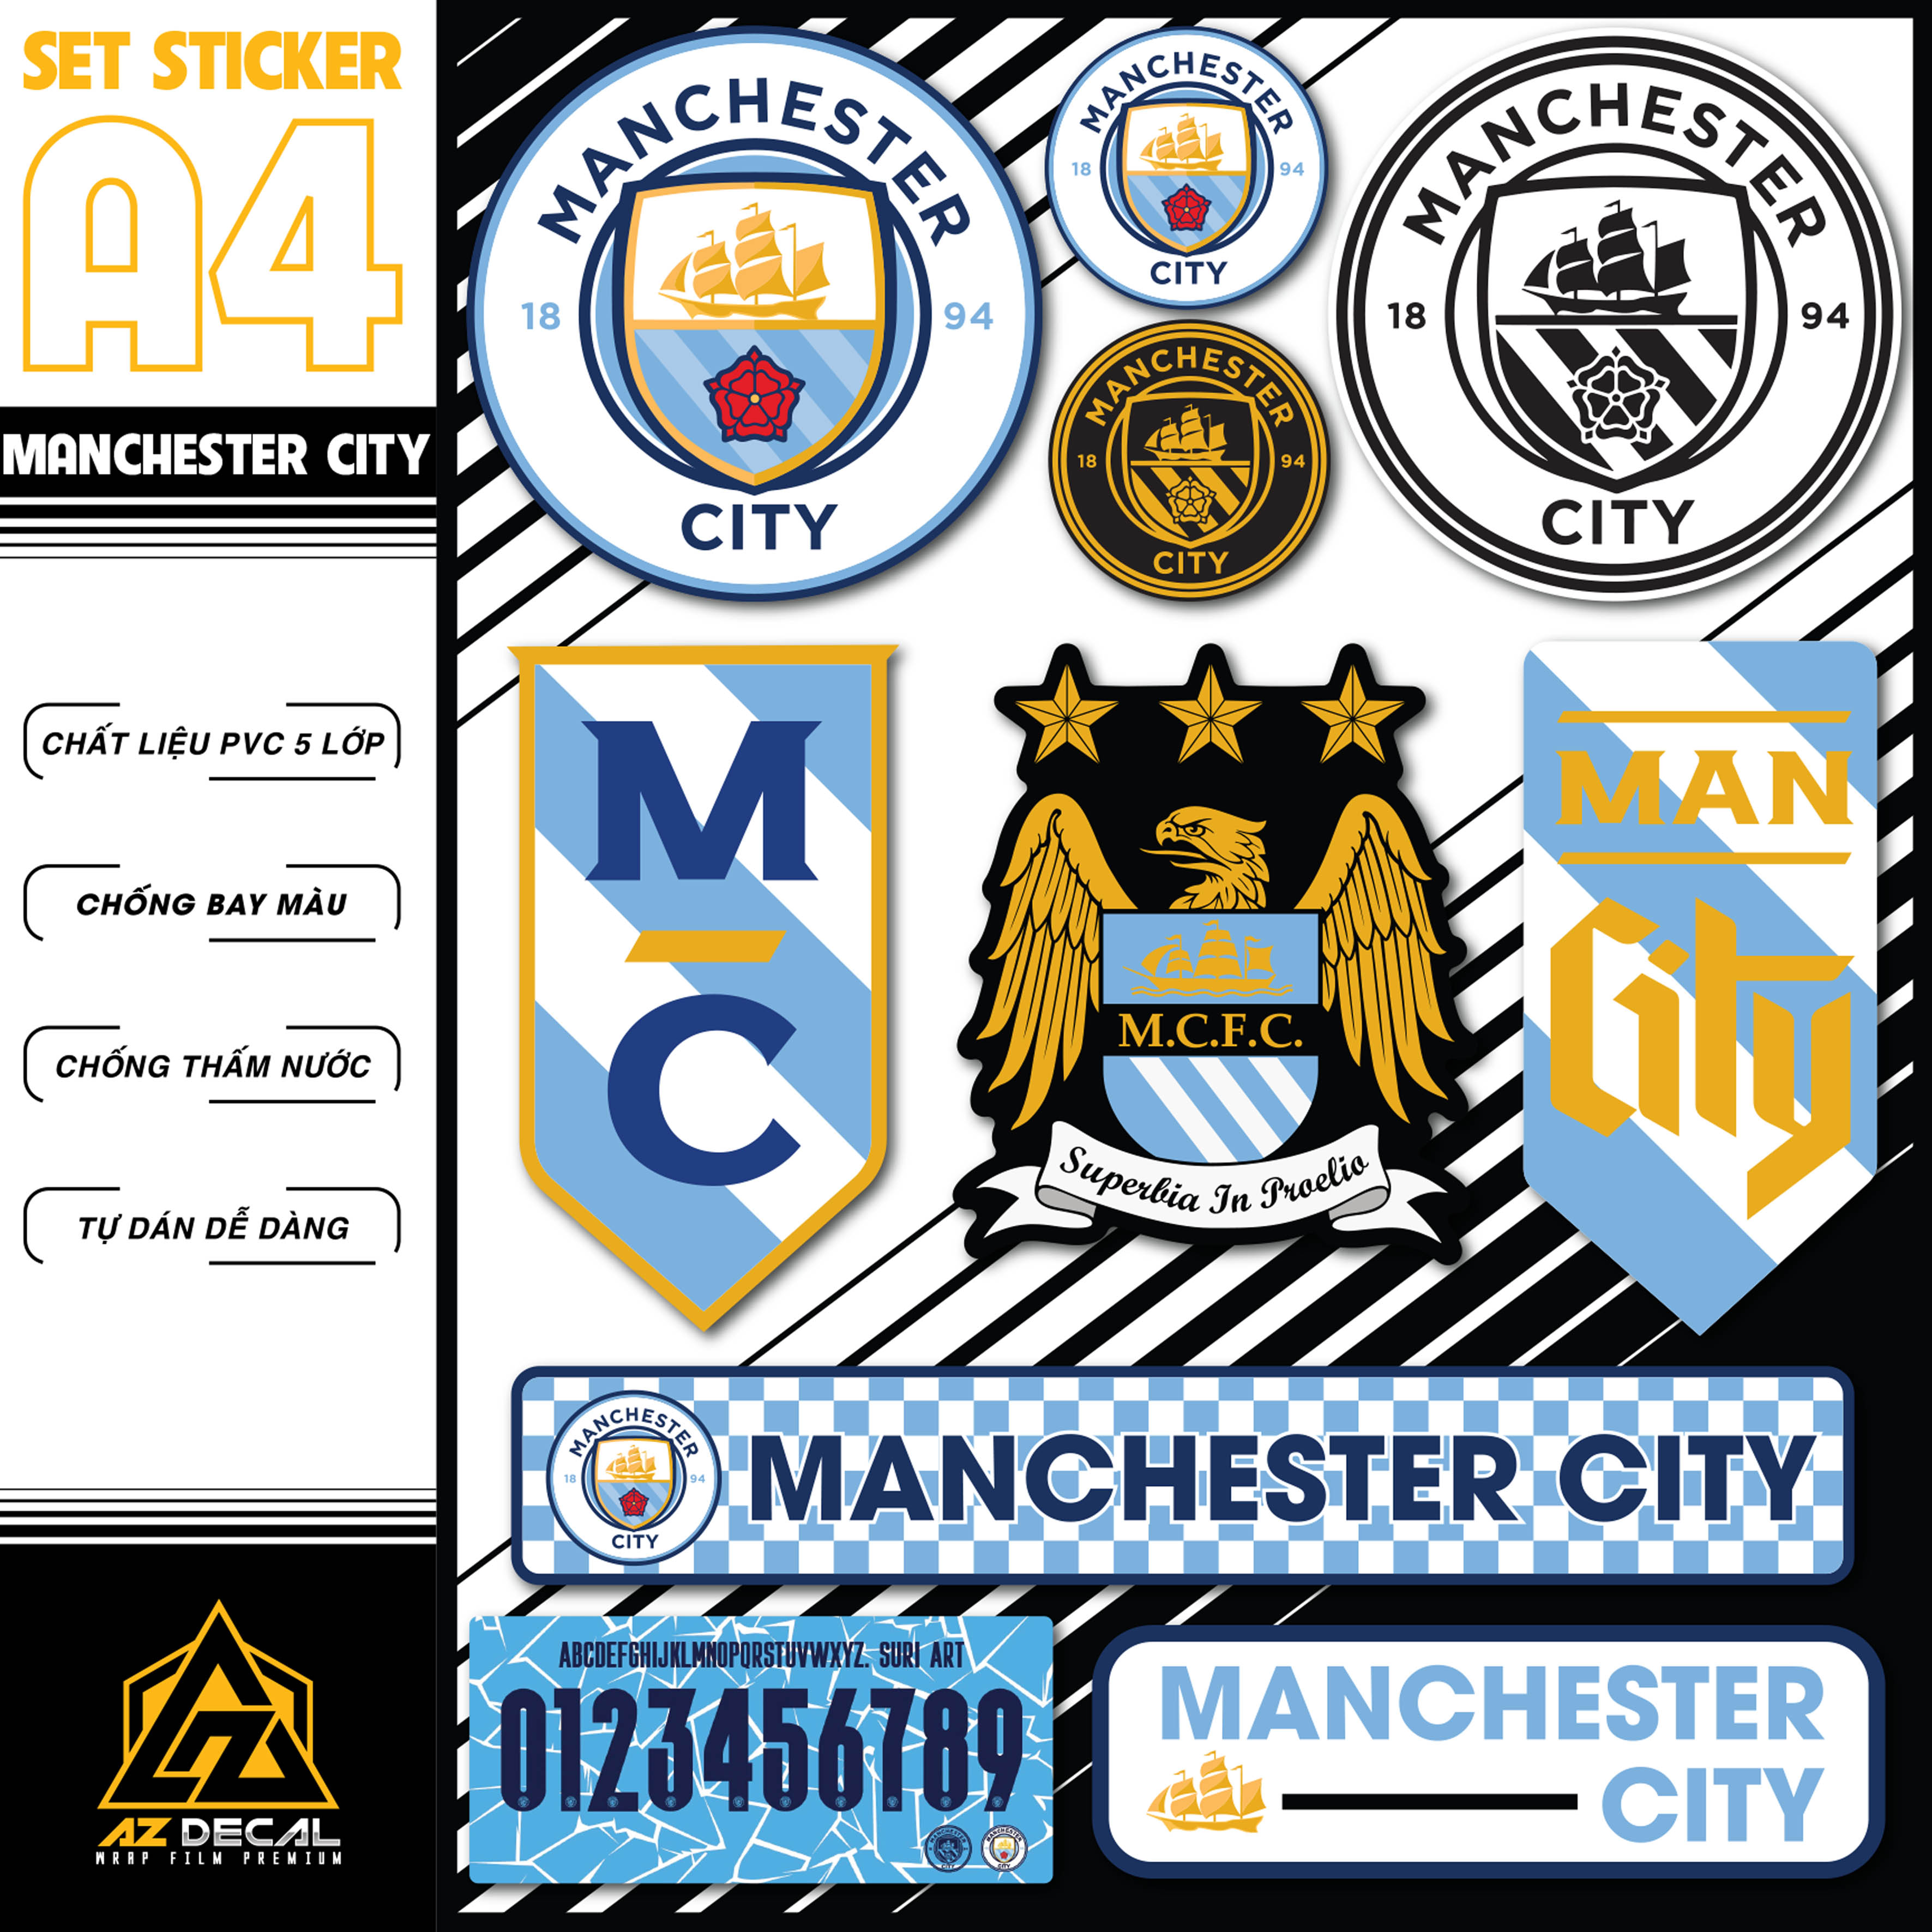 Sticker Bóng Đá Manchester City Dán Tem Xe, Dán Nón, Điện Thoại, Laptop